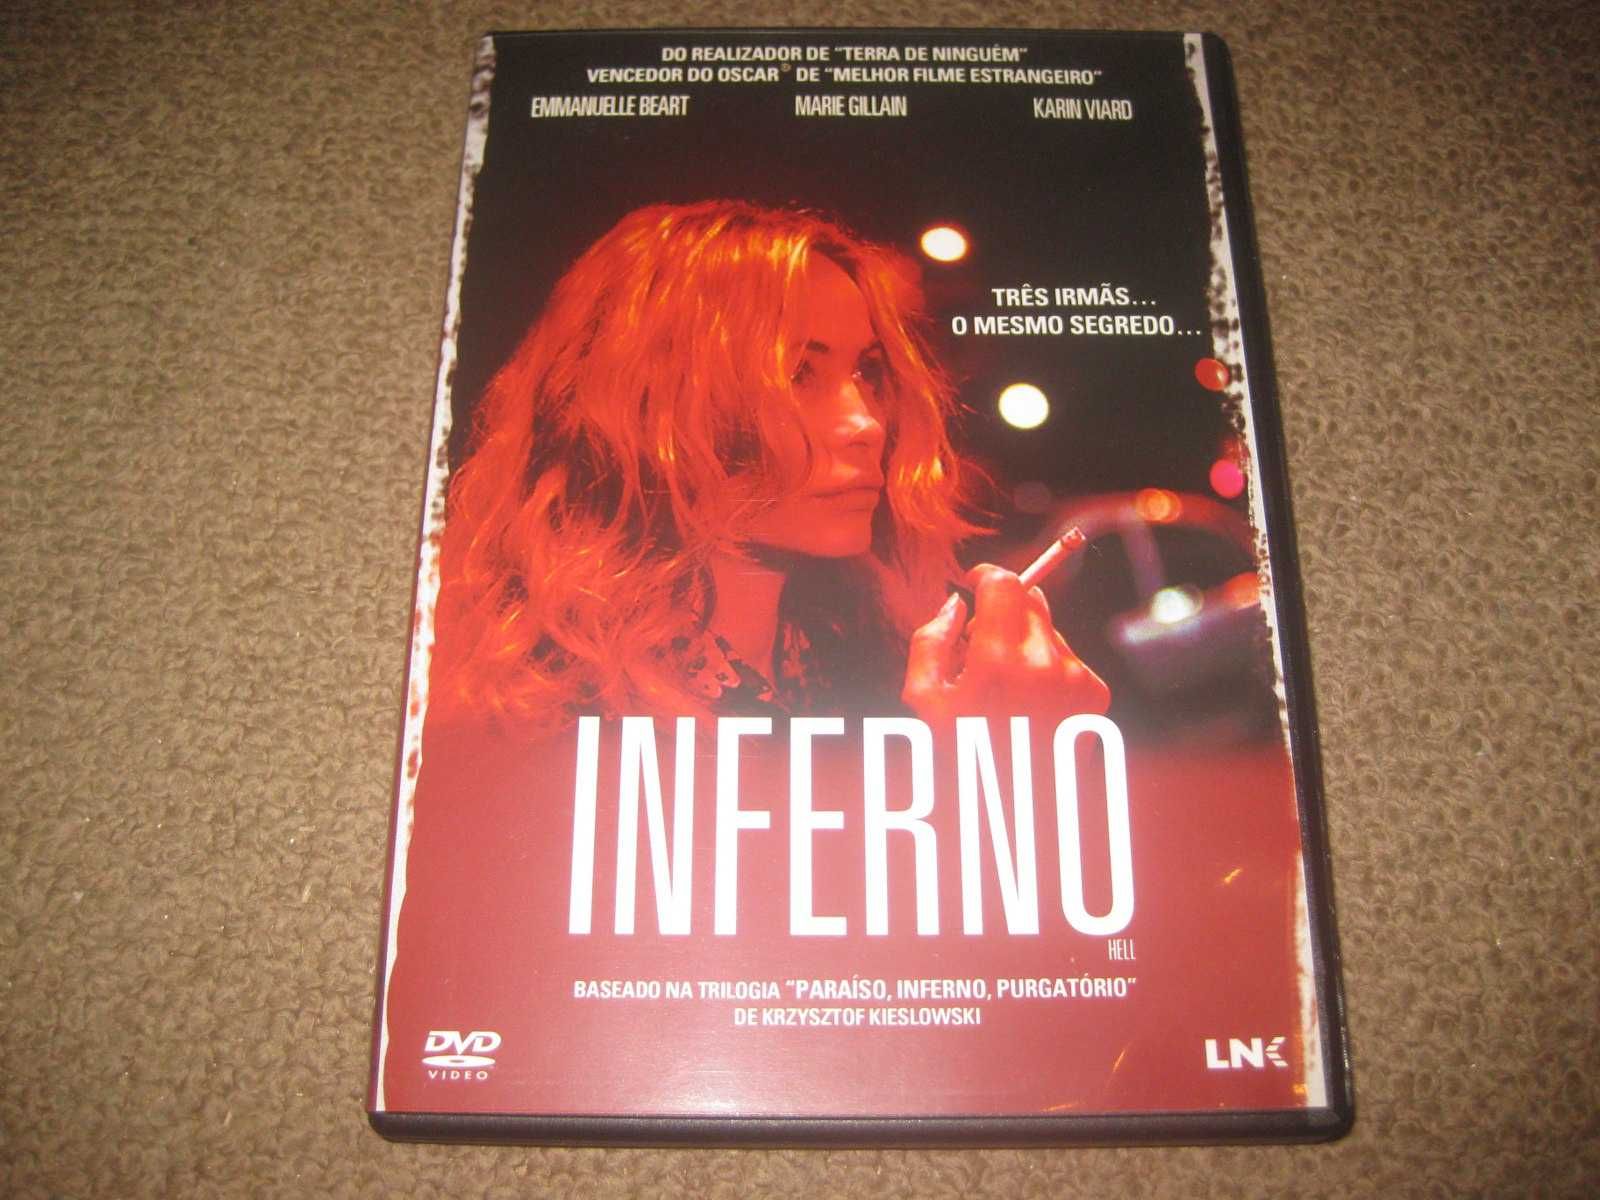 DVD "Inferno" de Danis Tanovic